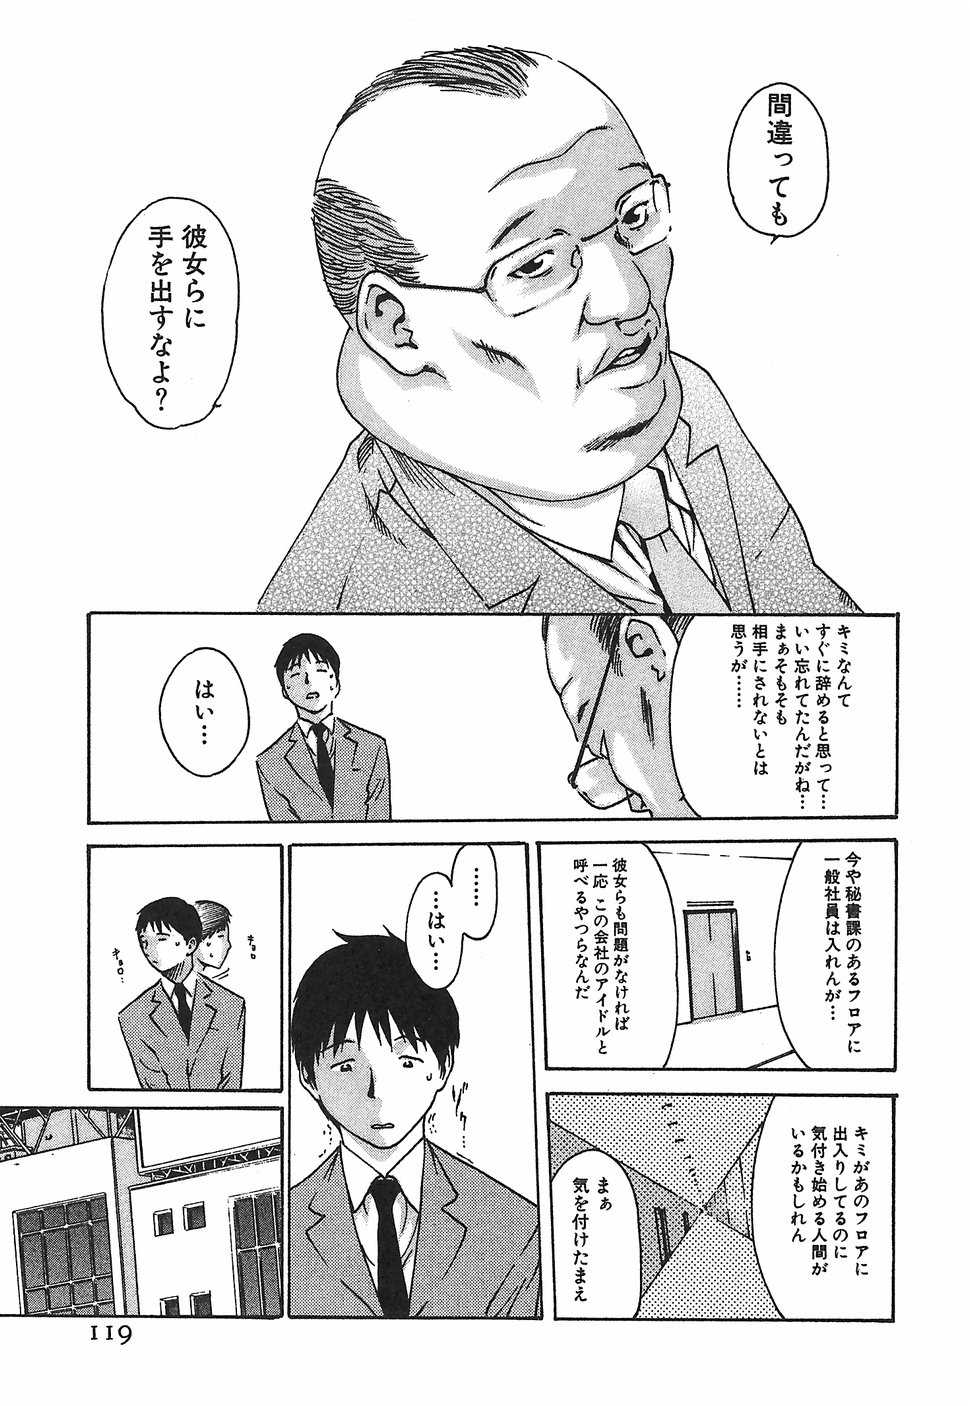 Secretarial section Drop 1 (Hishoka Drop, 秘書課ドロップ) (J) 